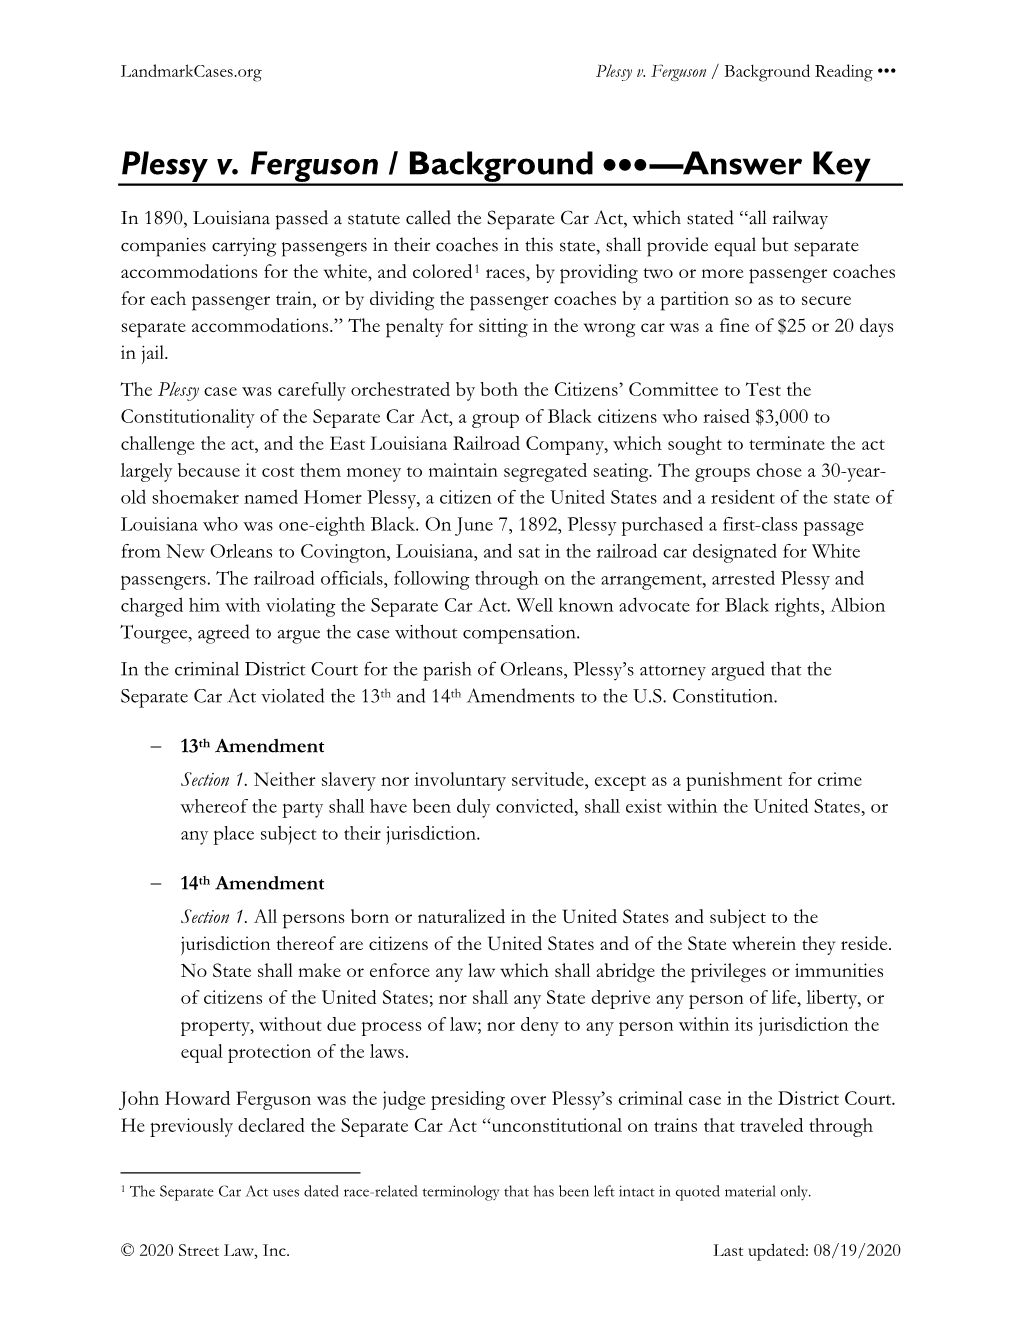 Plessy V. Ferguson / Background •••—Answer Key